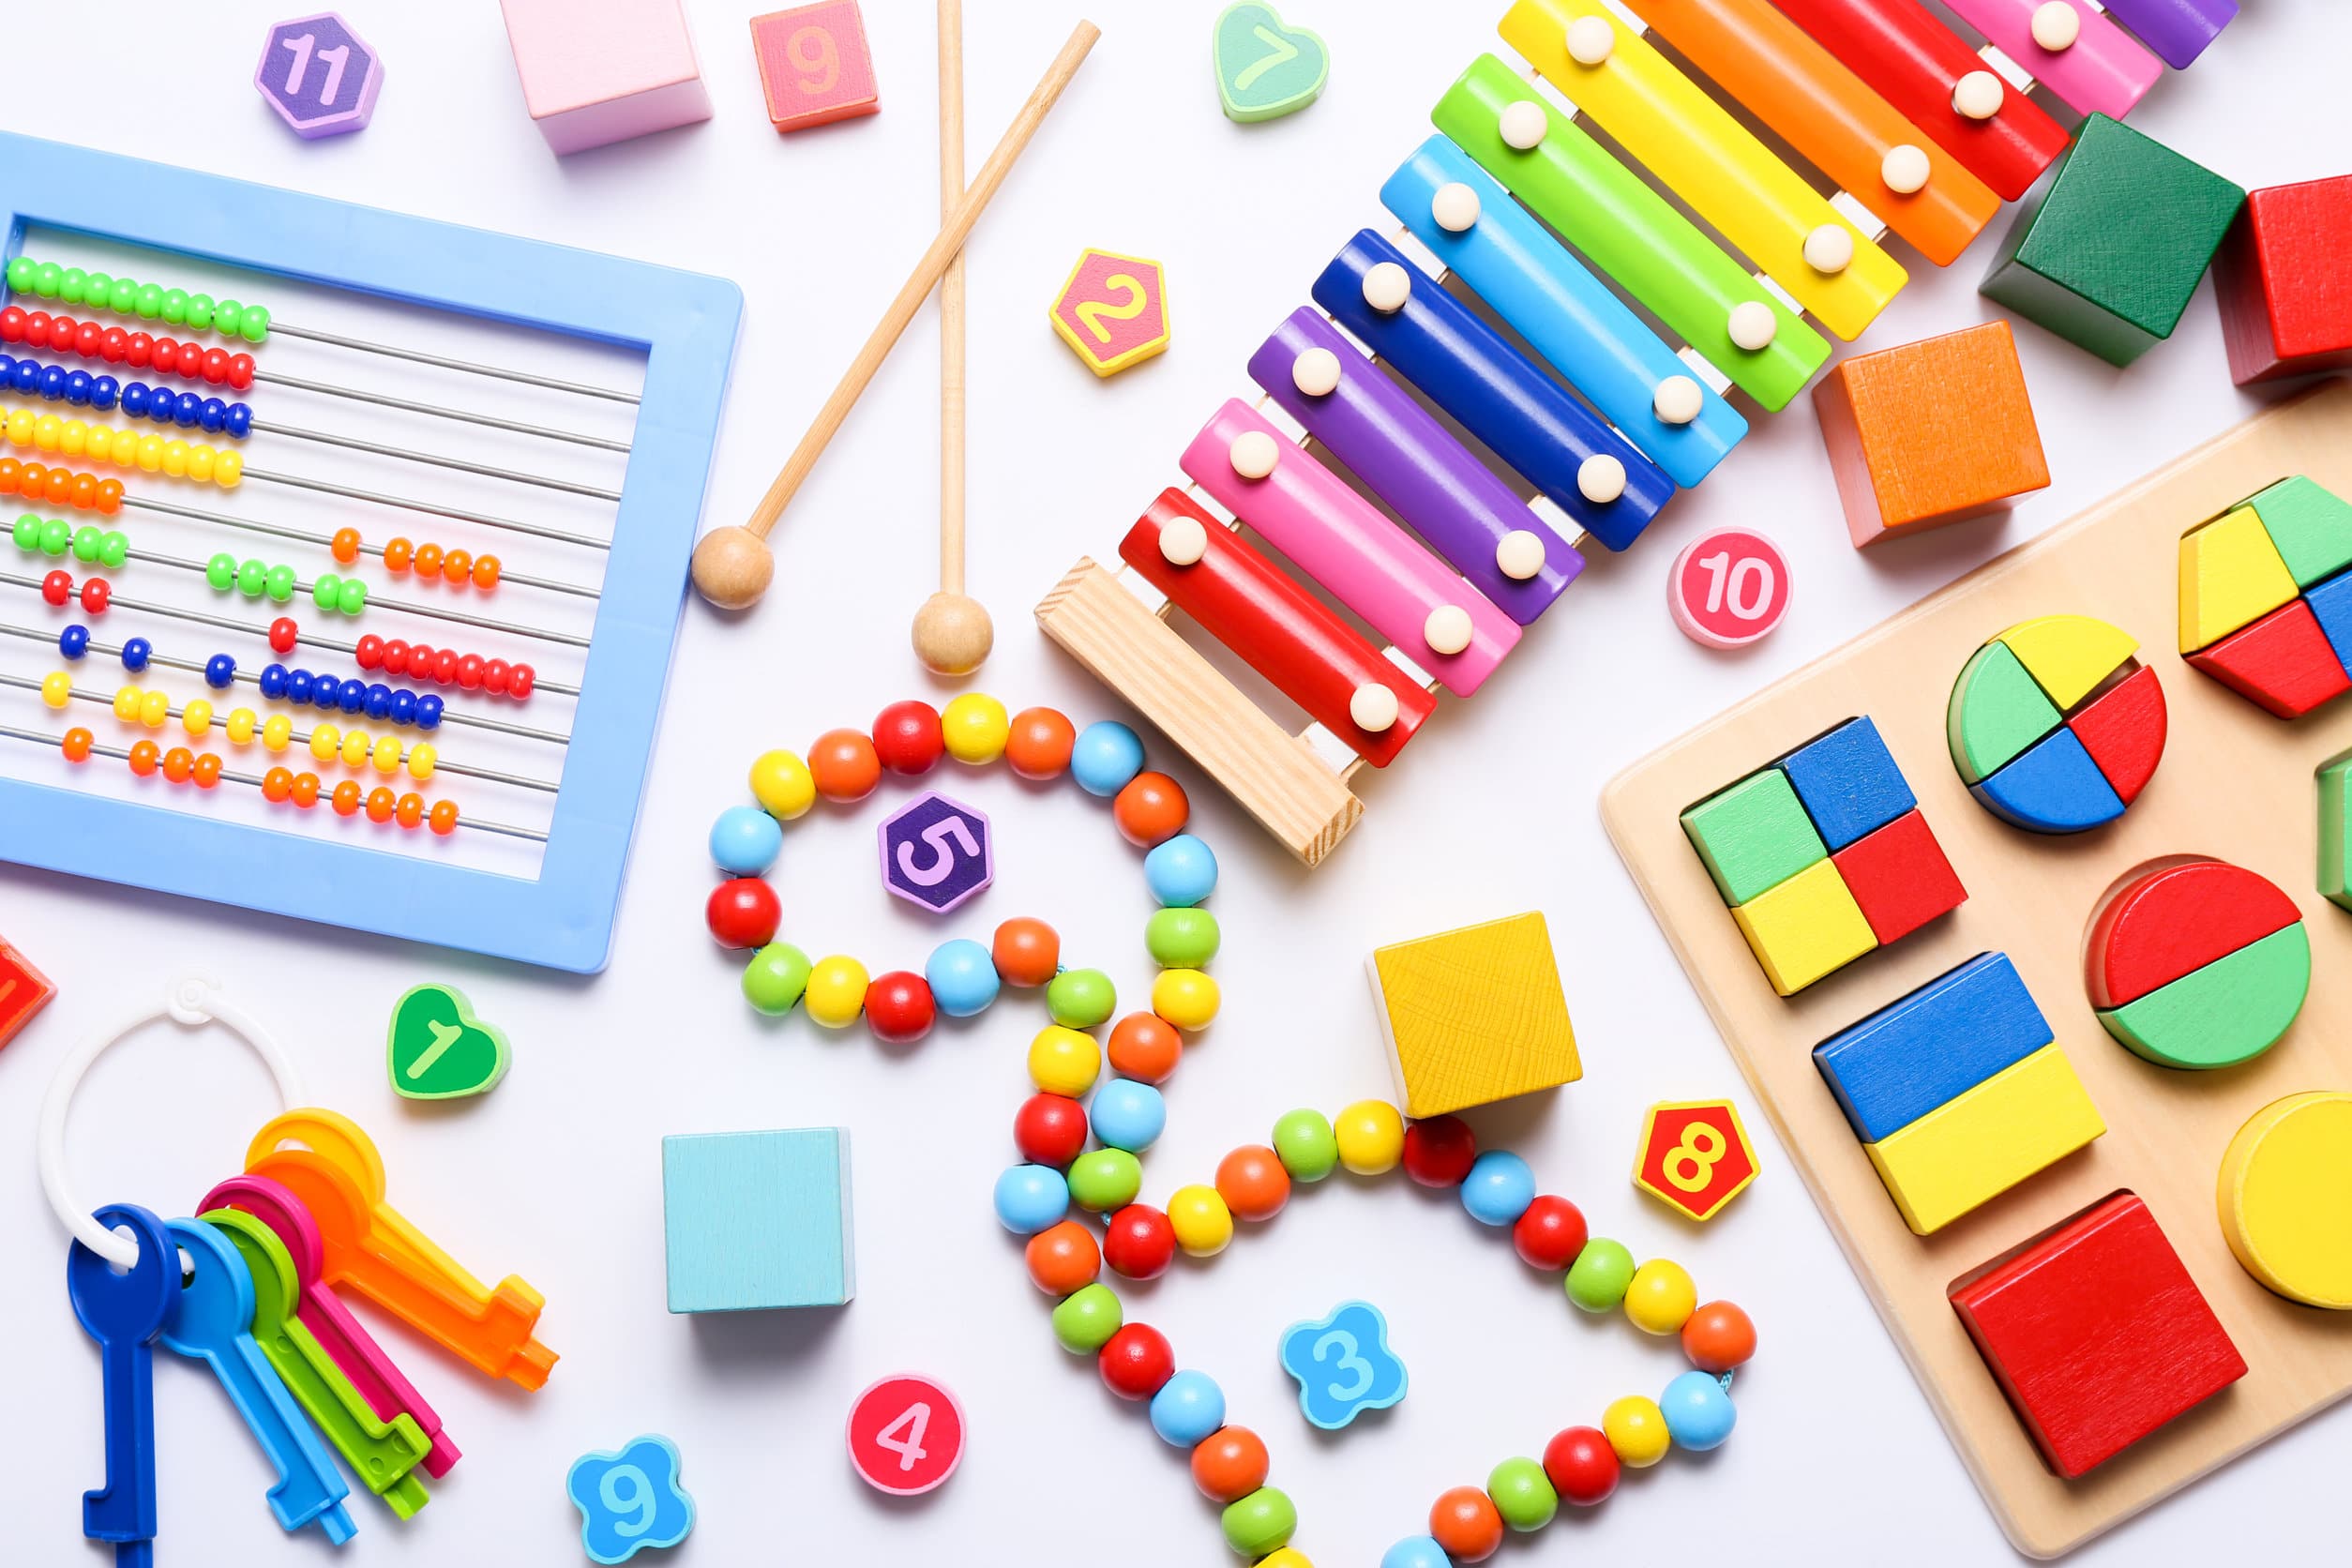 Decine di coloratissimi giocattoli educativi per bambini visti dall'alto